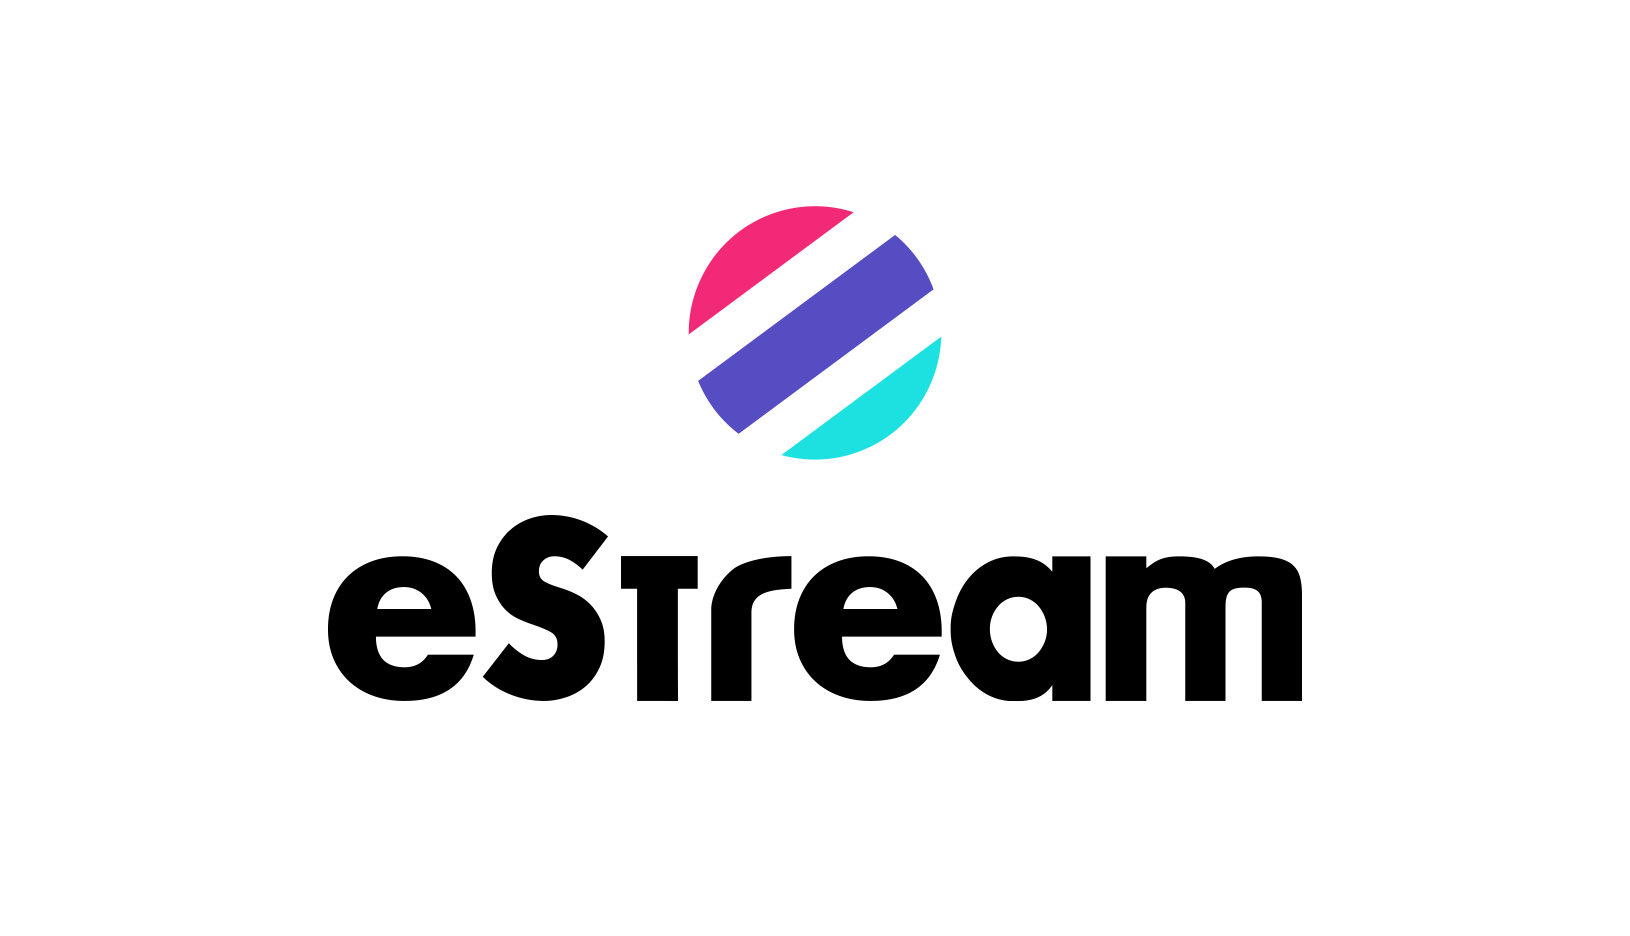 eStream